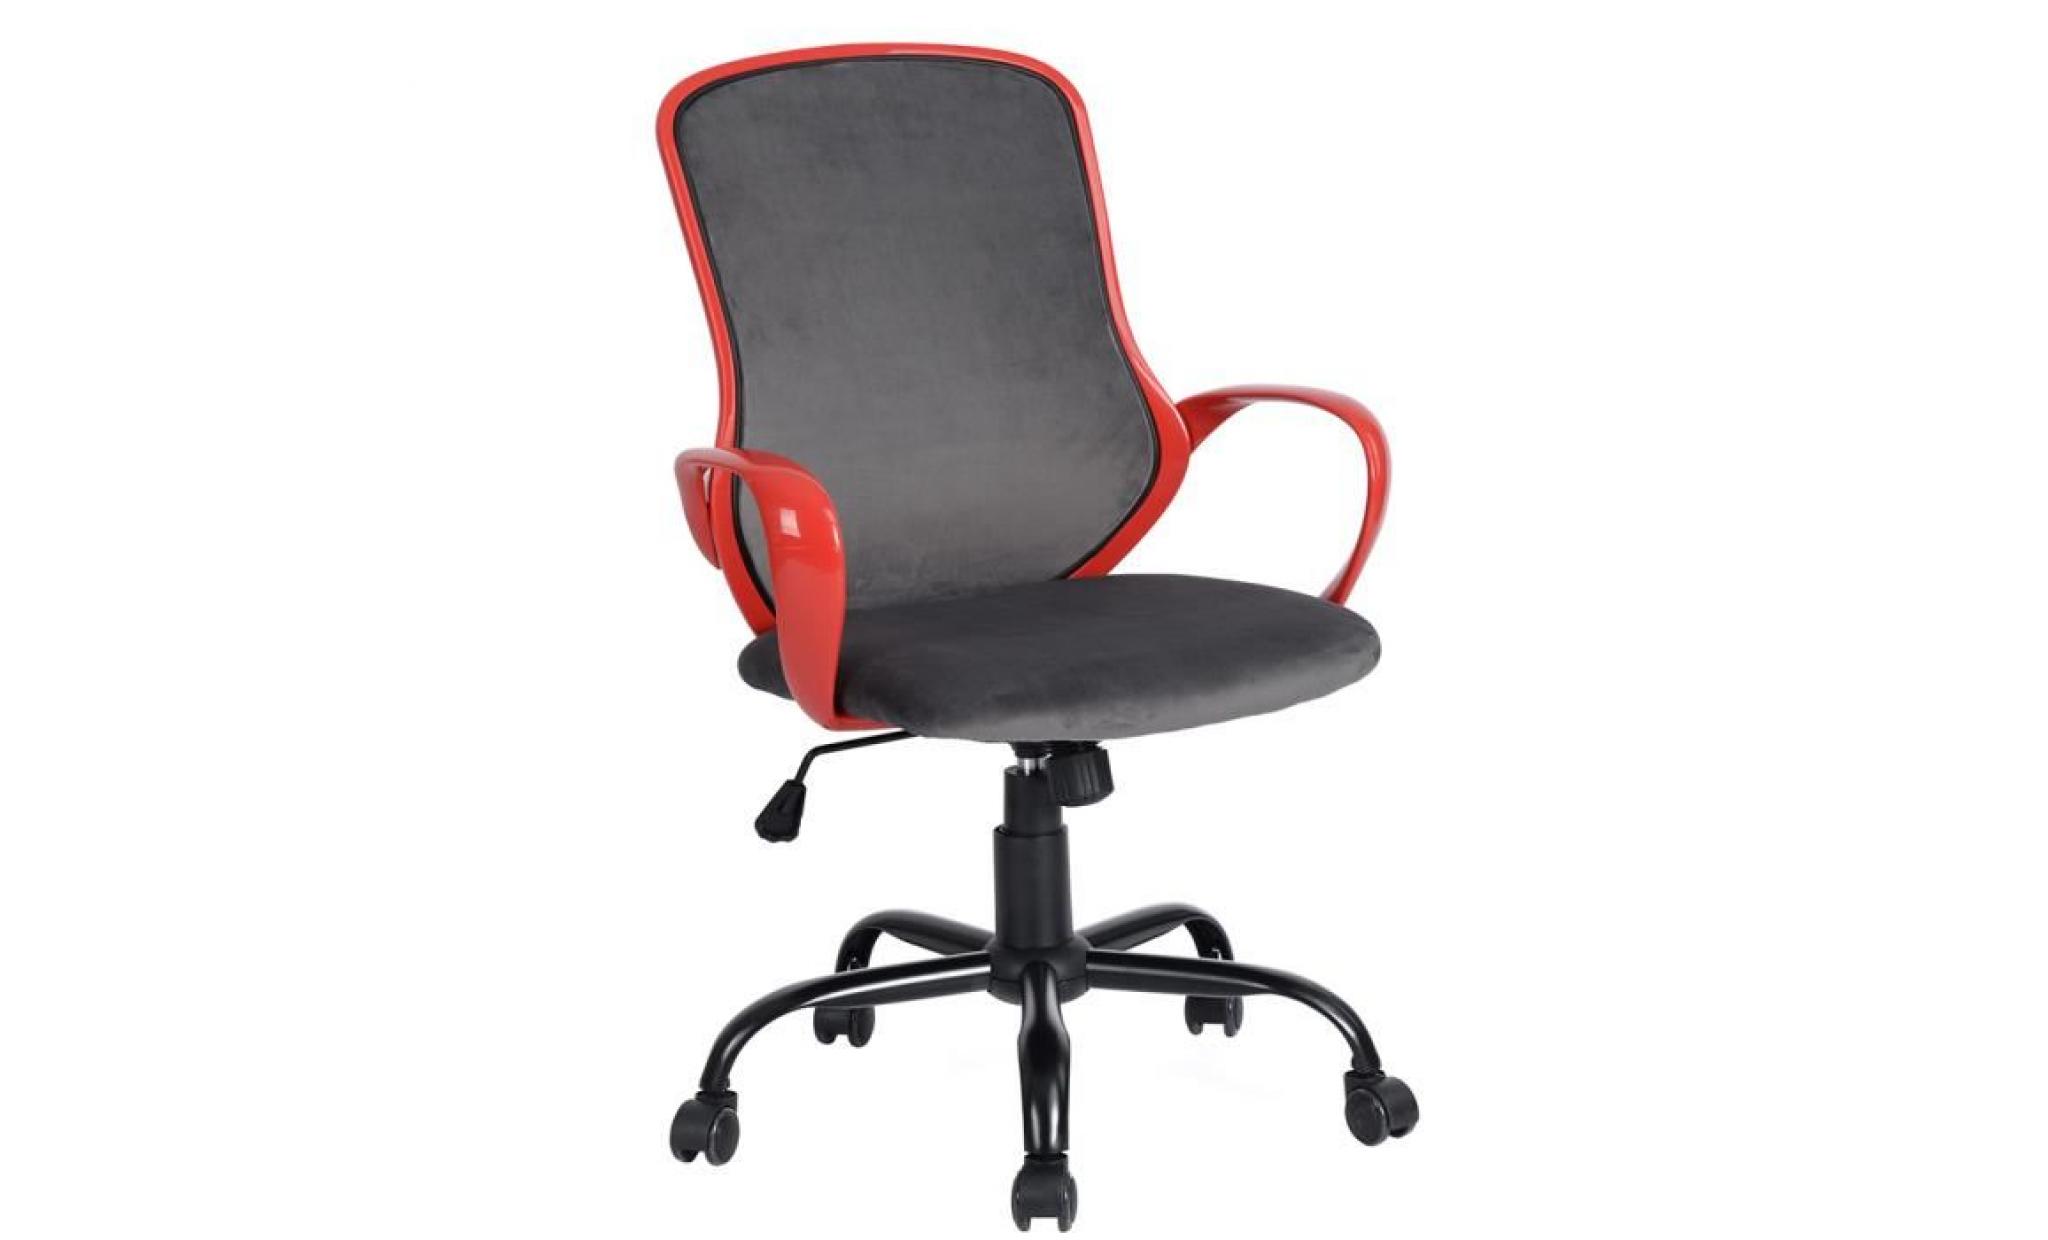 fauteuil chaise de bureau gris rouge réglable roulettes velours structure en plastique pp métal ajustable hauteur 64 x 63 x 95 105cm pas cher